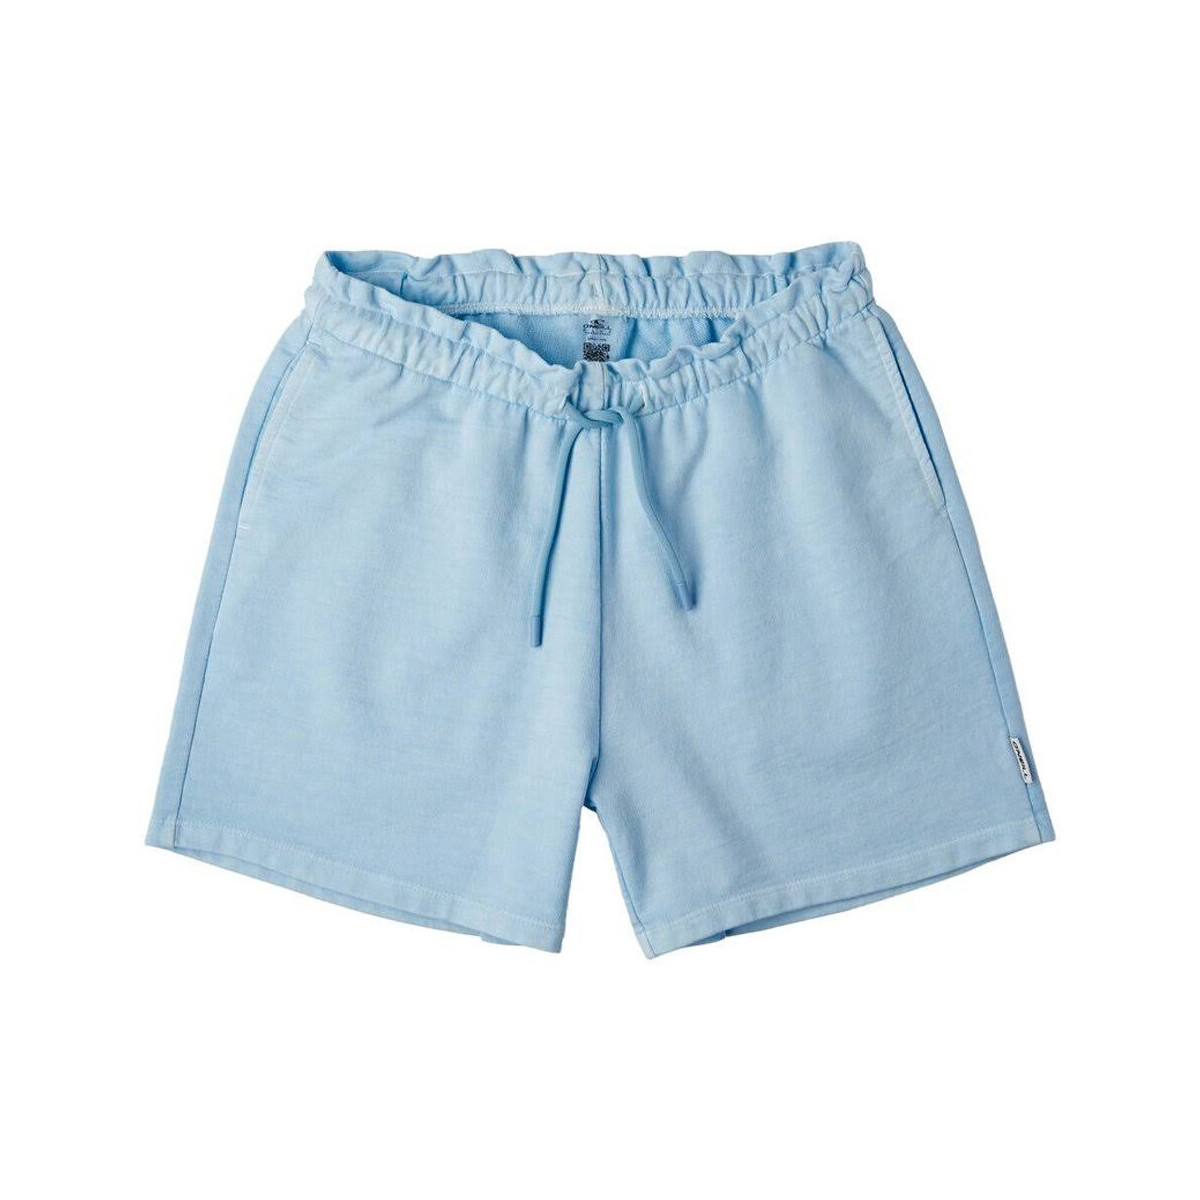 Textil Rapariga Shorts / Bermudas O'neill  Azul